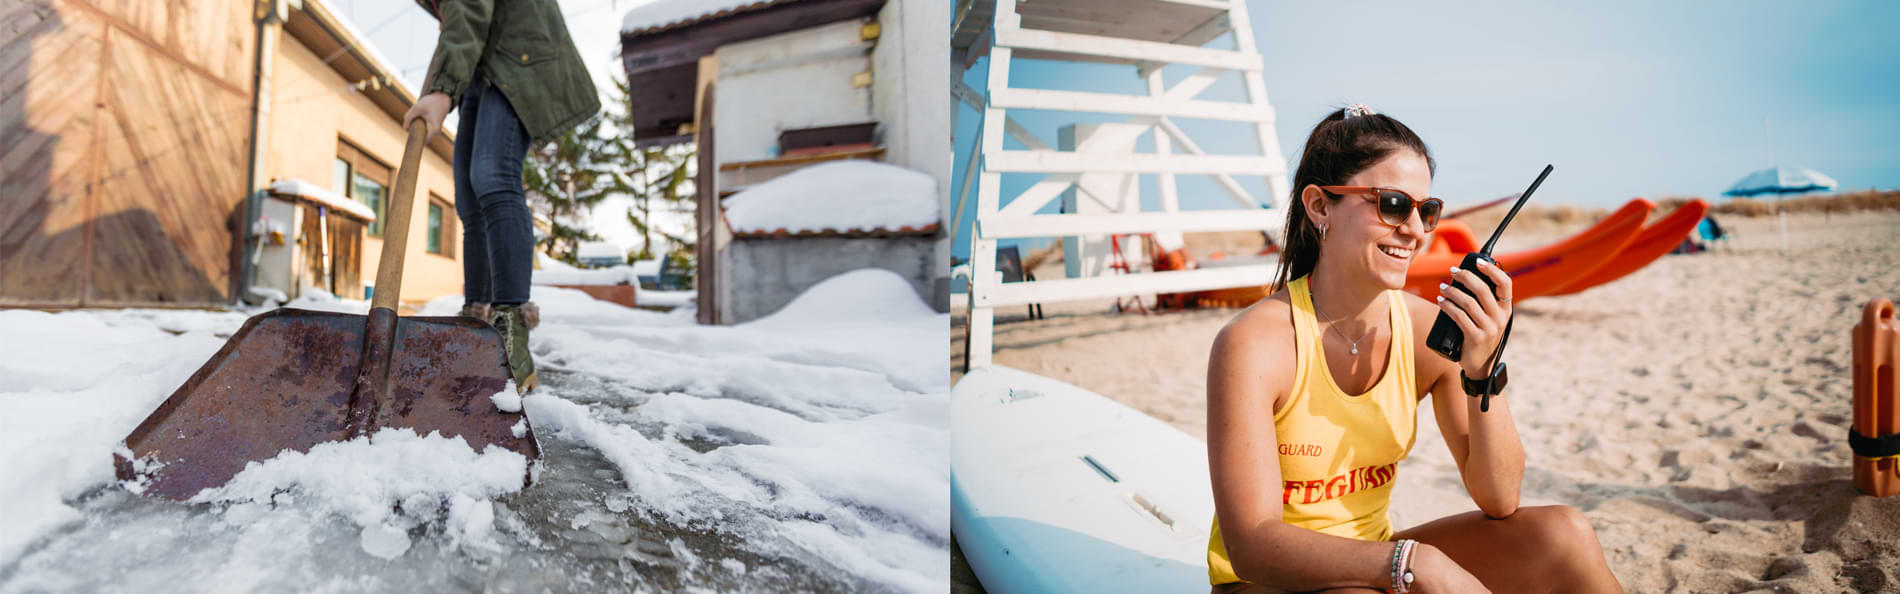 Eine Collage aus zwei Bildern – links eine Person beim Schneeschippen, rechts eine lächelnde junge Rettungsschwimmerin mit Funkgerät